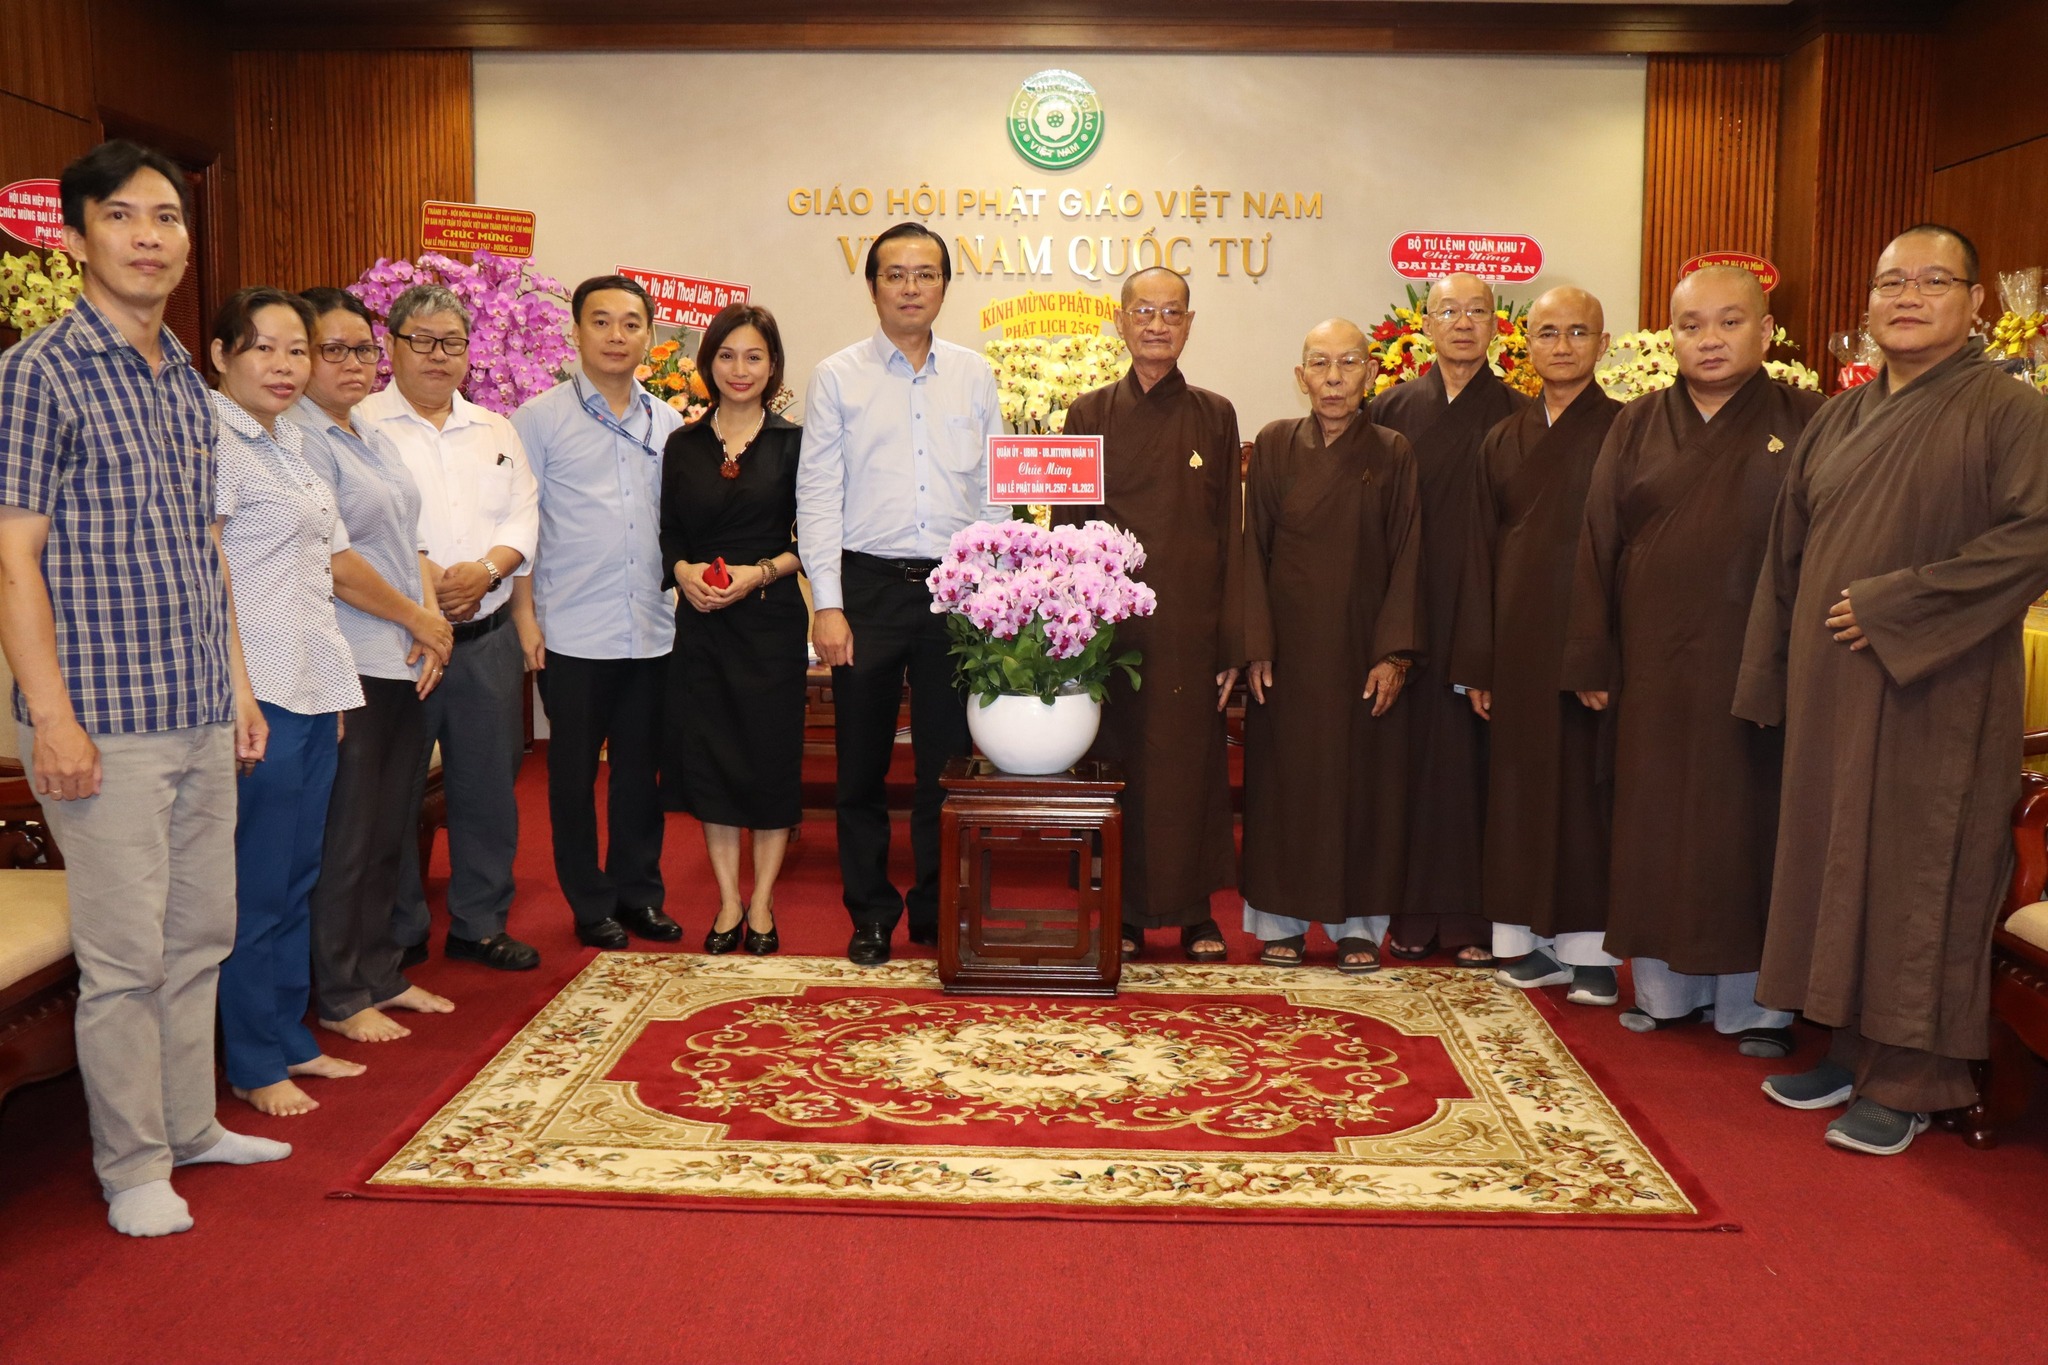 Image: Đoàn lãnh đạo Quận ủy - Ủy ban nhân dân - Ủy ban MTTQ Việt Nam Quận 10 đến thăm, chúc mừng các có sở Phật giáo trên địa bàn Quận 10 nhân Đại lễ Phật lịch 2567 - Dương lịch 2023.